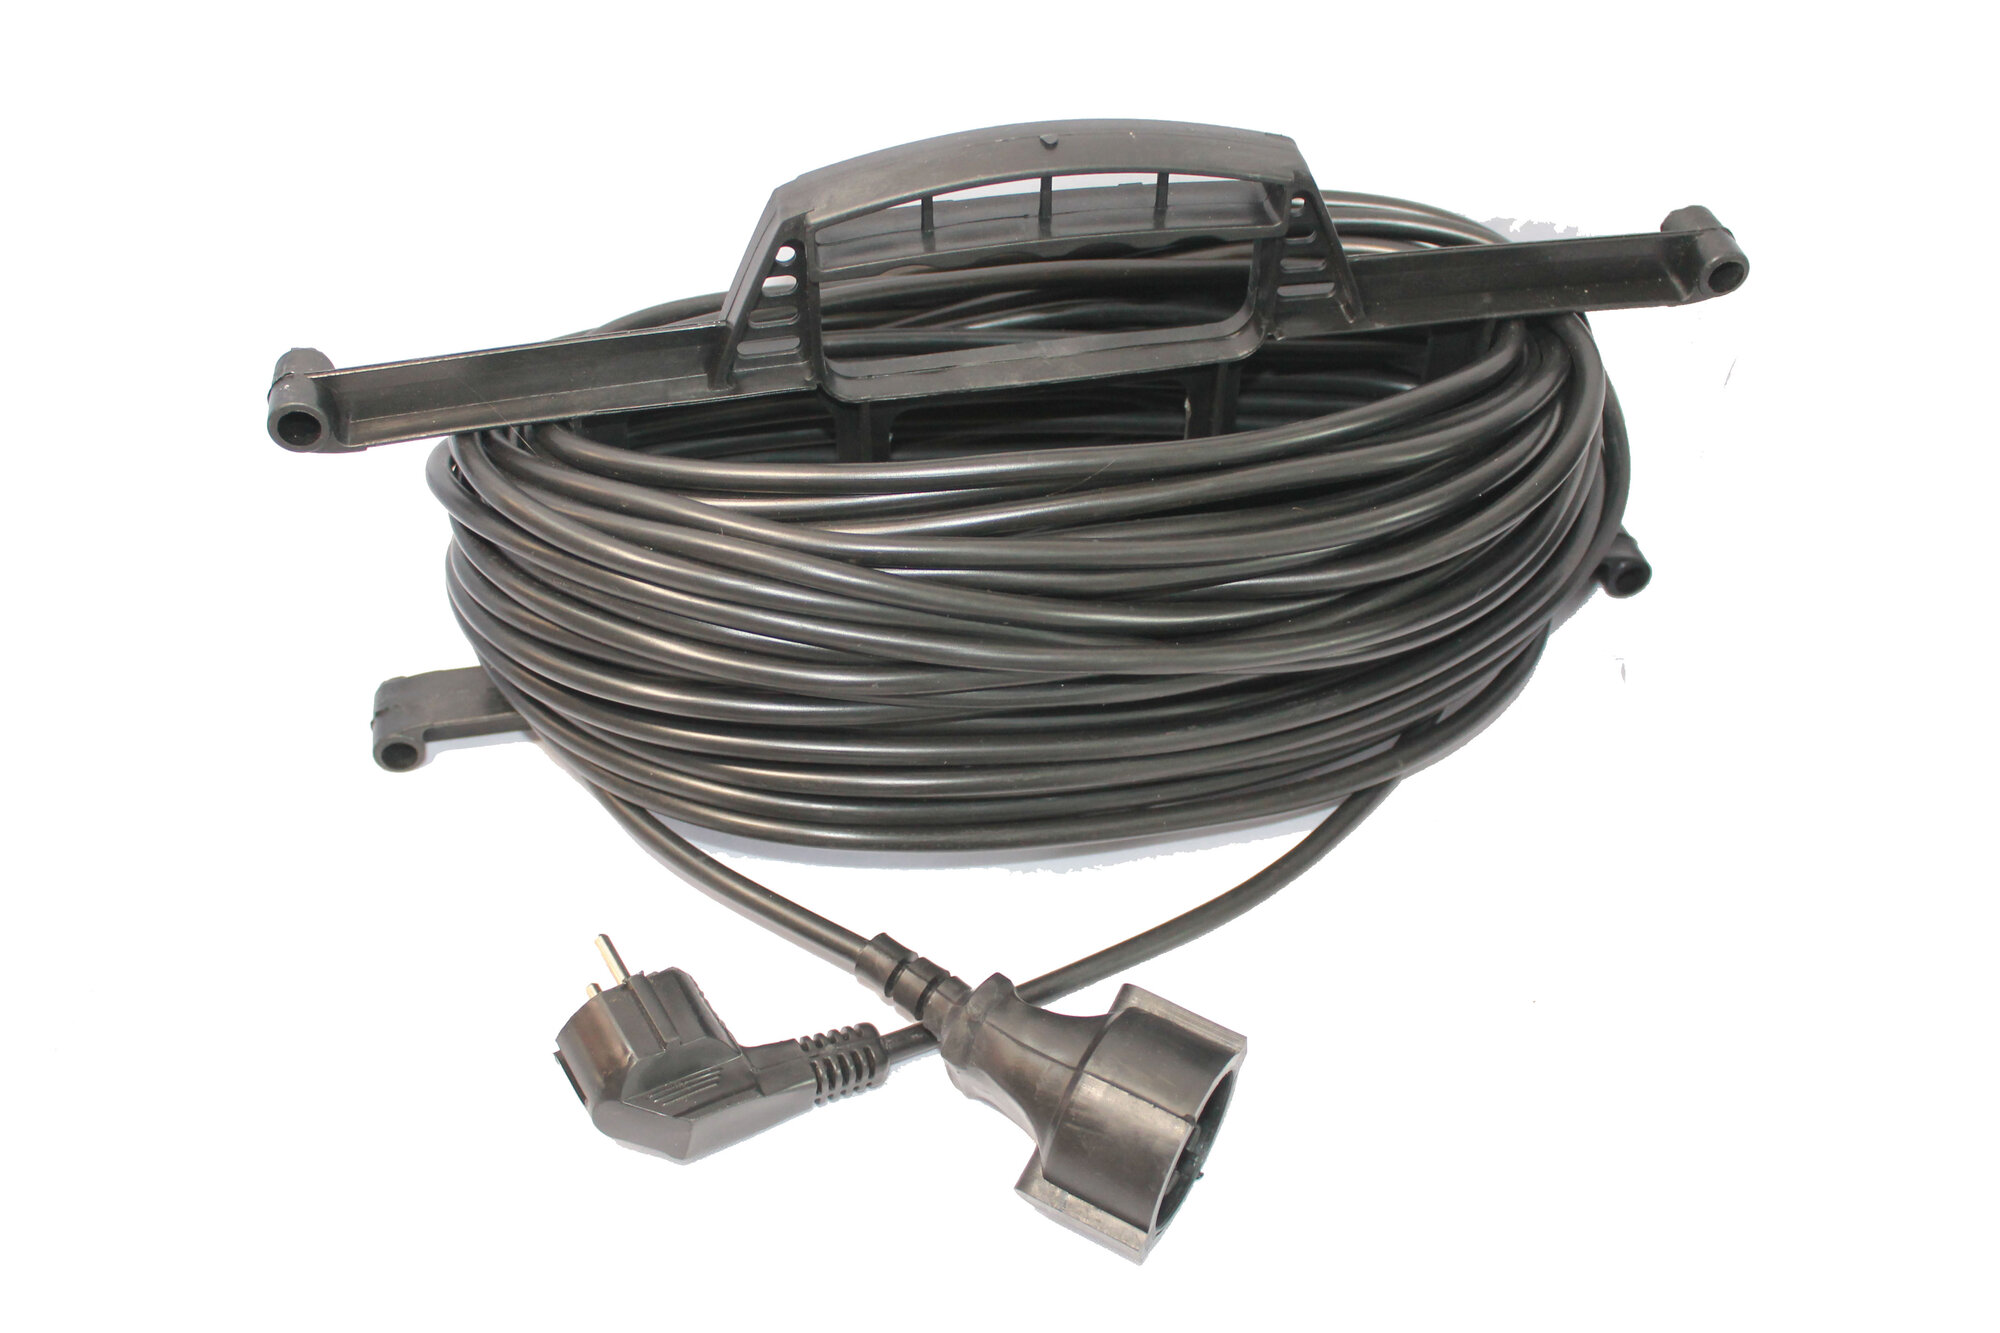 Удлинитель на рамке, длина 40м (кабель ПВС 2*1,5 ) 40 м, модель джетт 1 электрический, сетевой, садовый